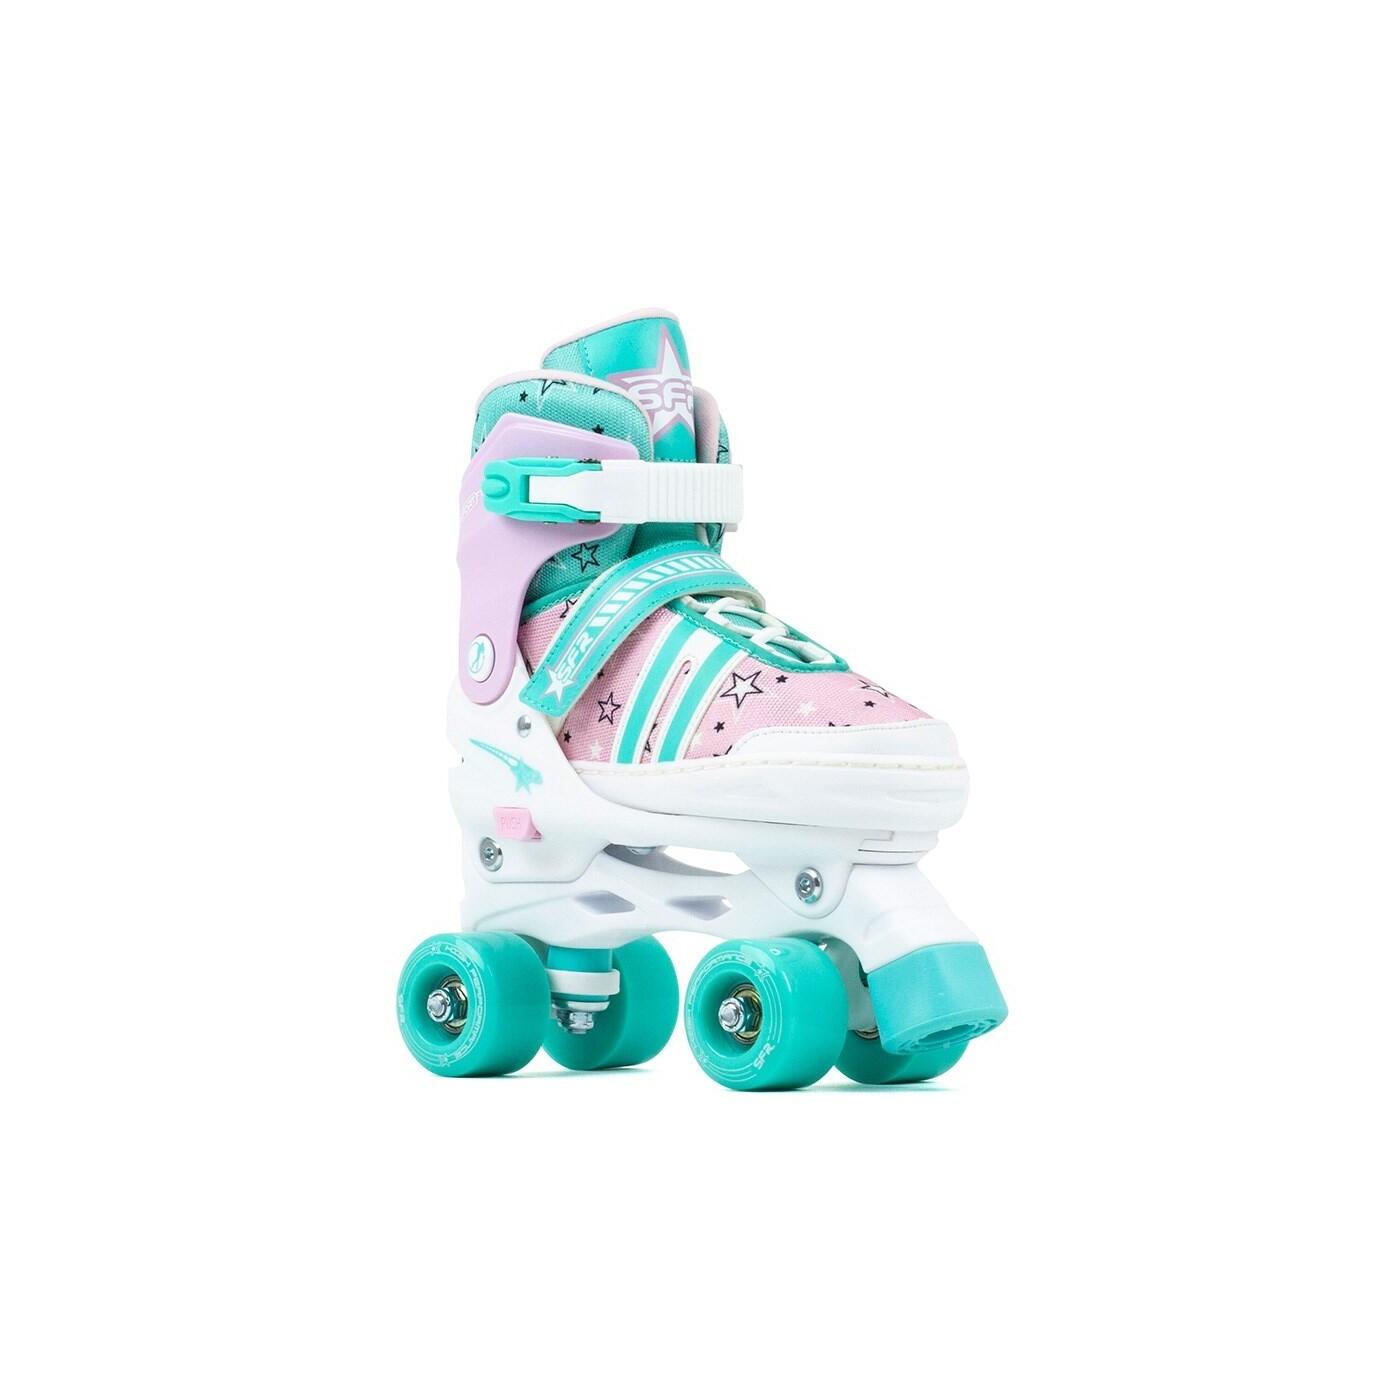 Spectra Teal/Pink Adjustable Kids Quad Roller Skates 1/3